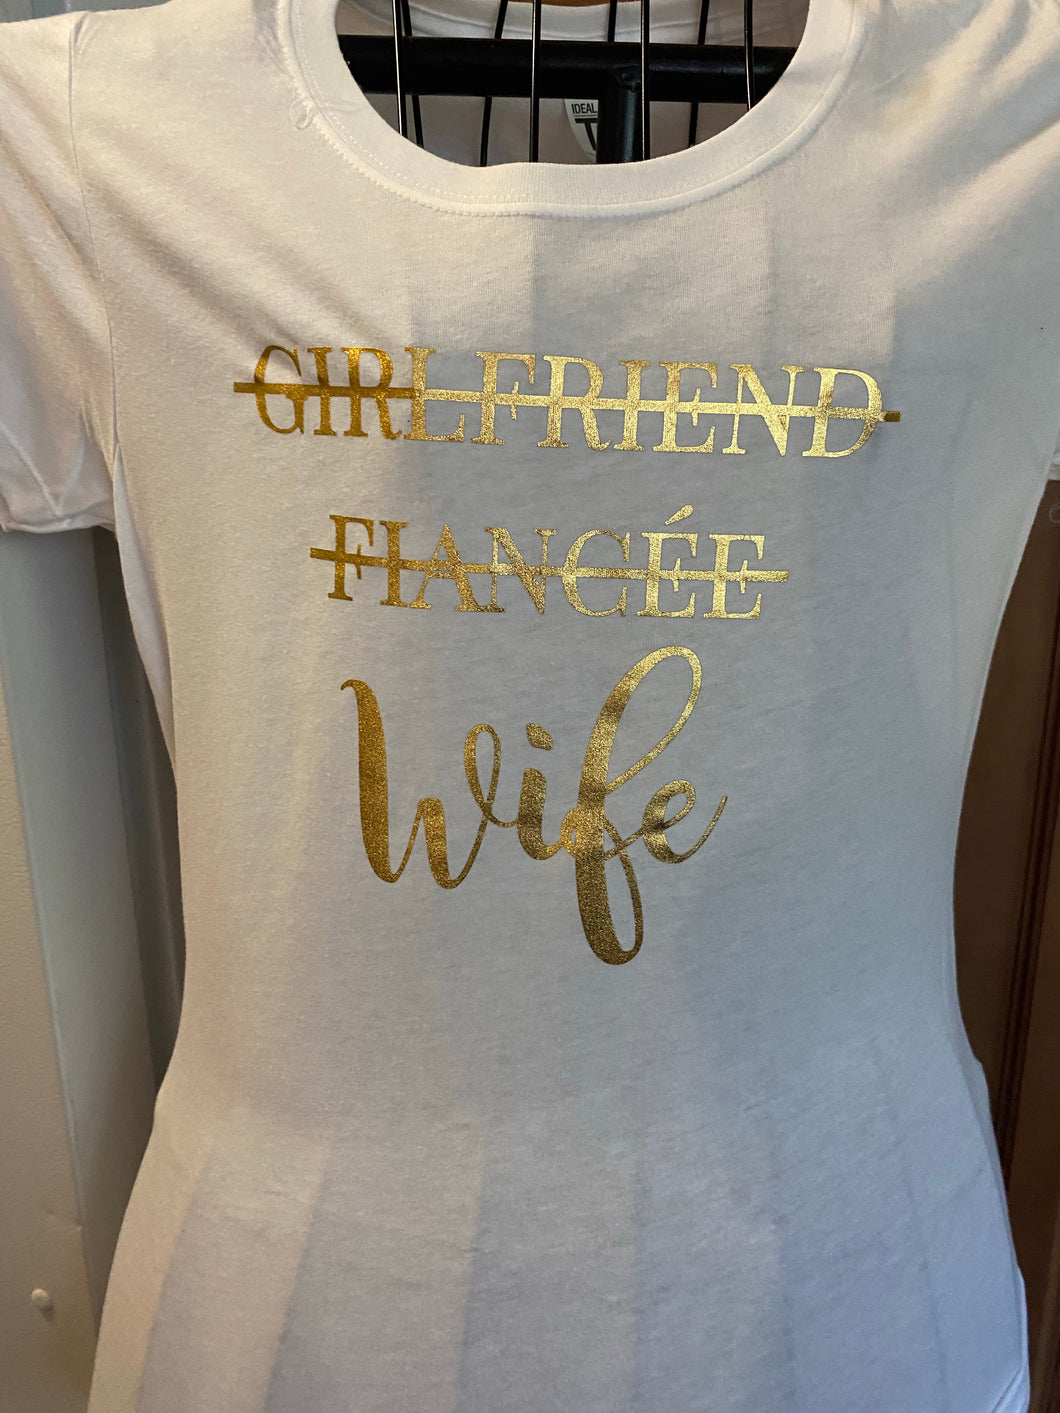 Girlfriend, Fiancé, WIFE